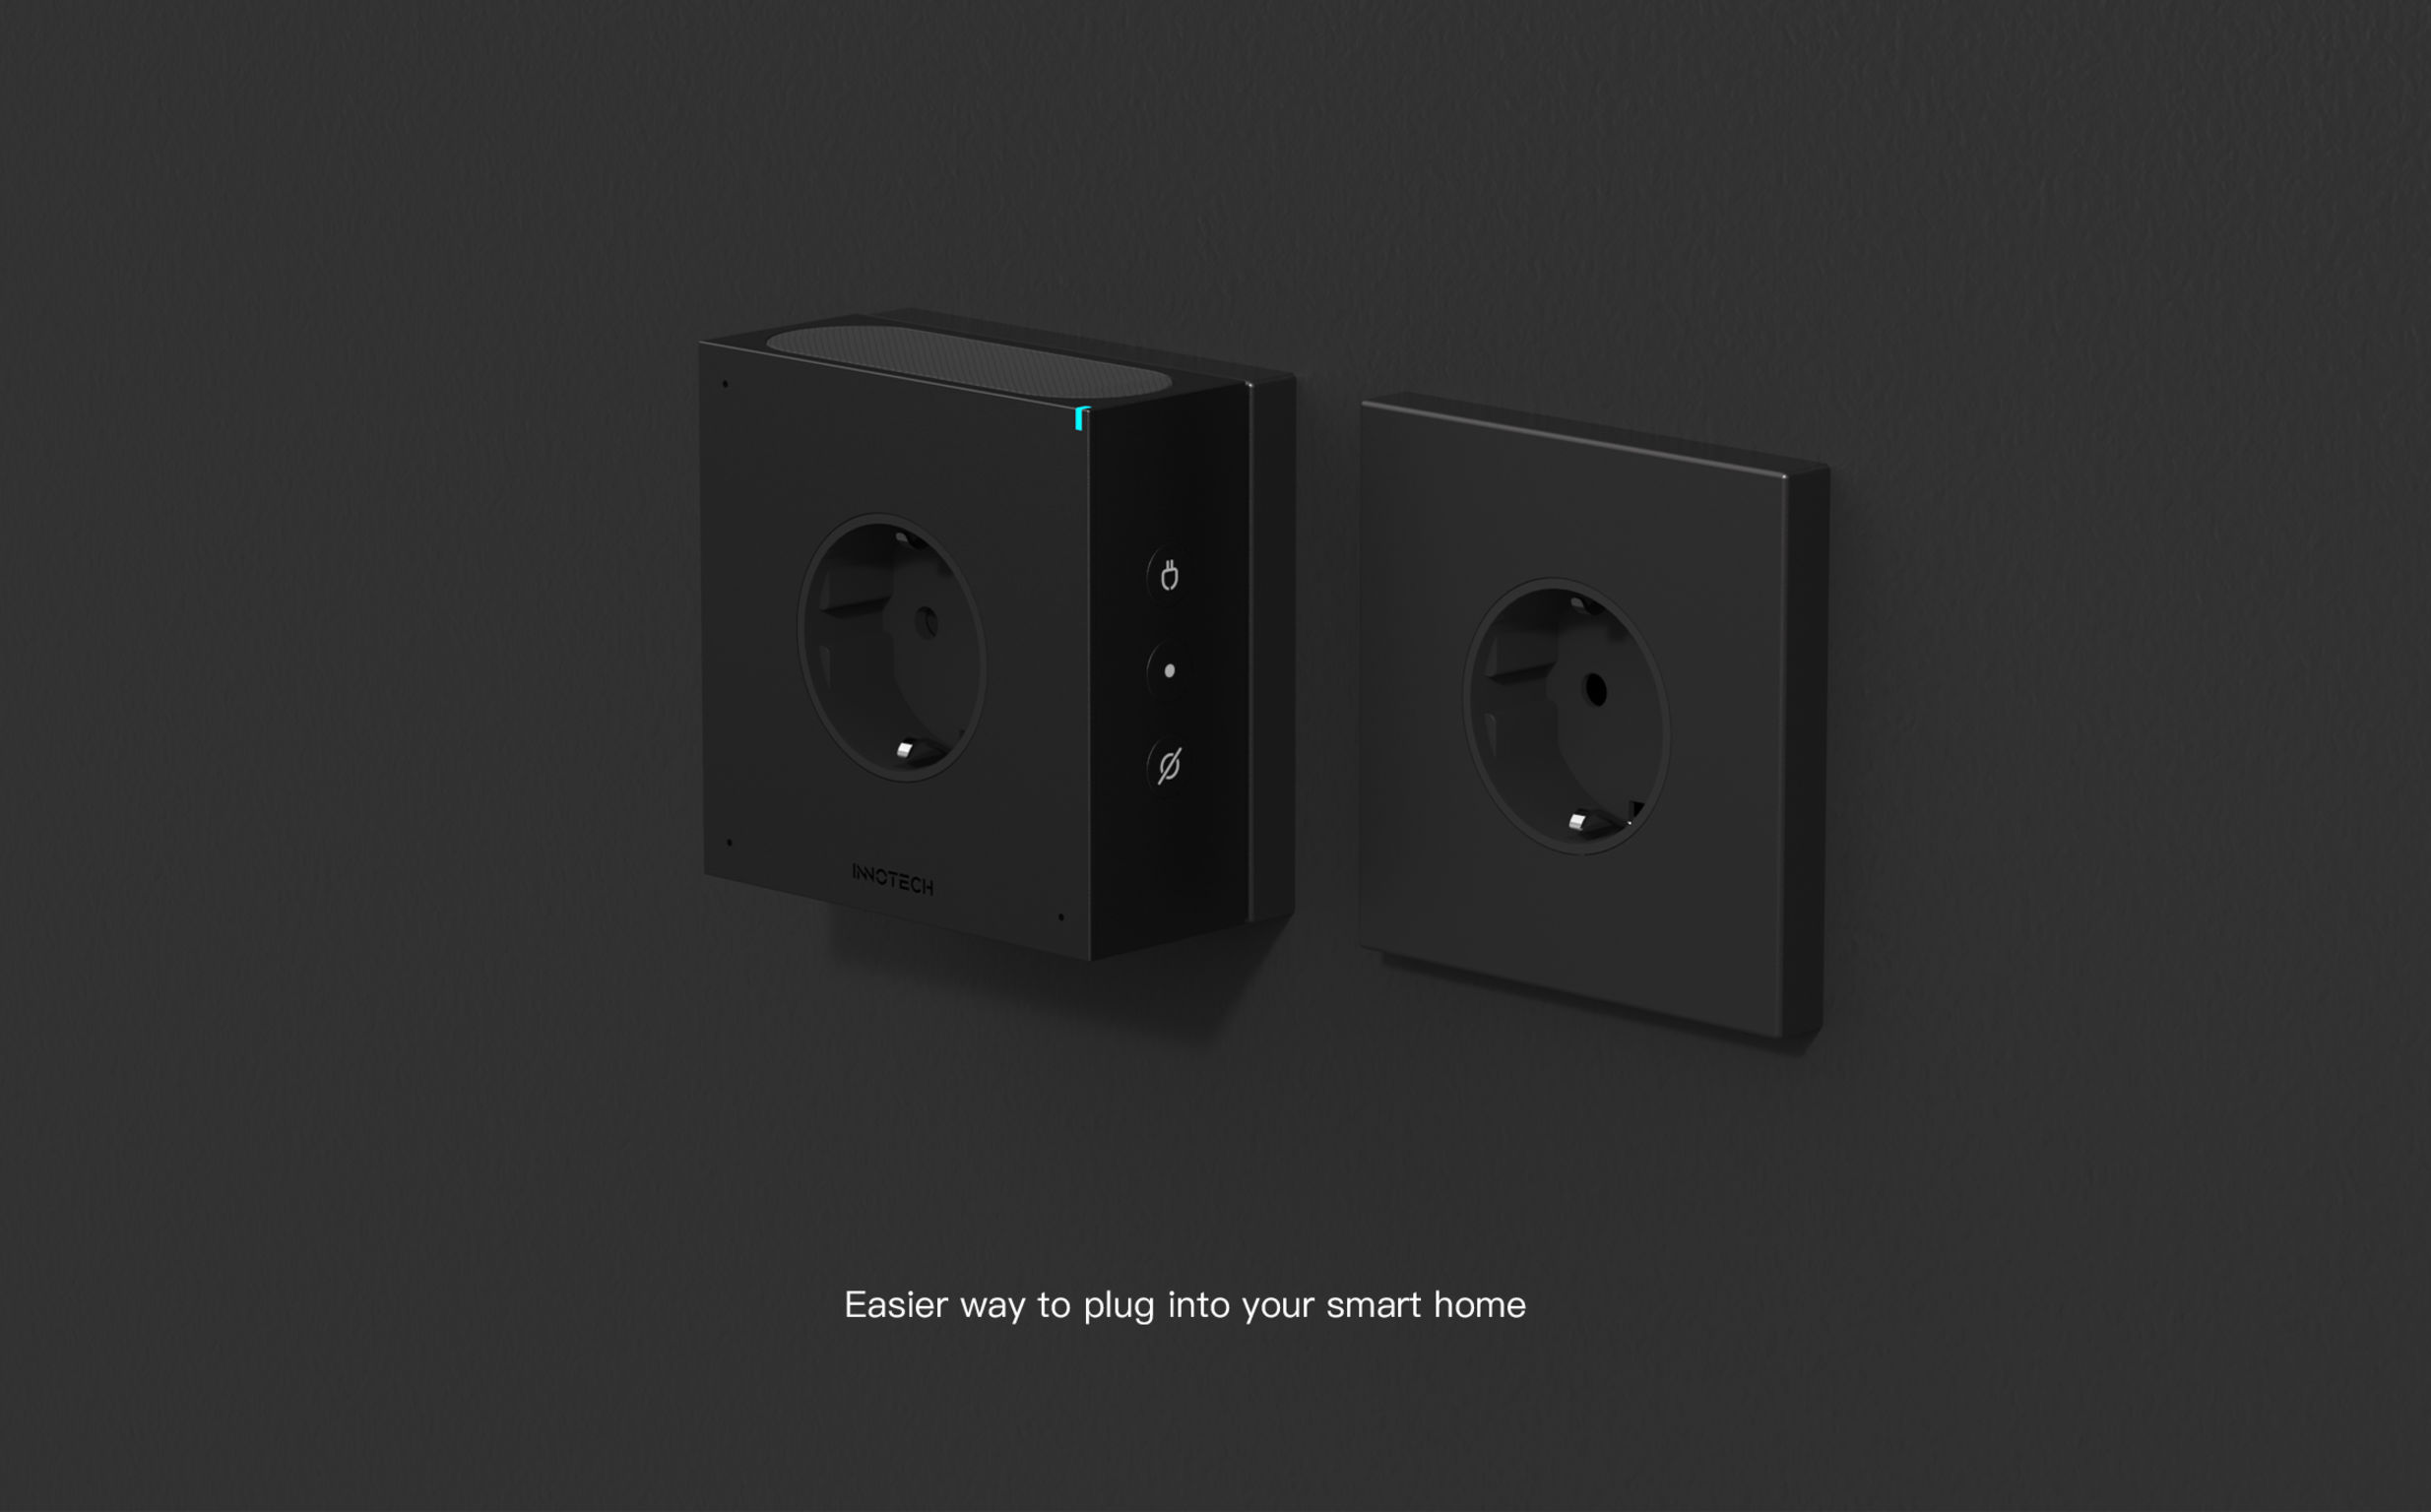 iF Design - Alexa built-in Plug